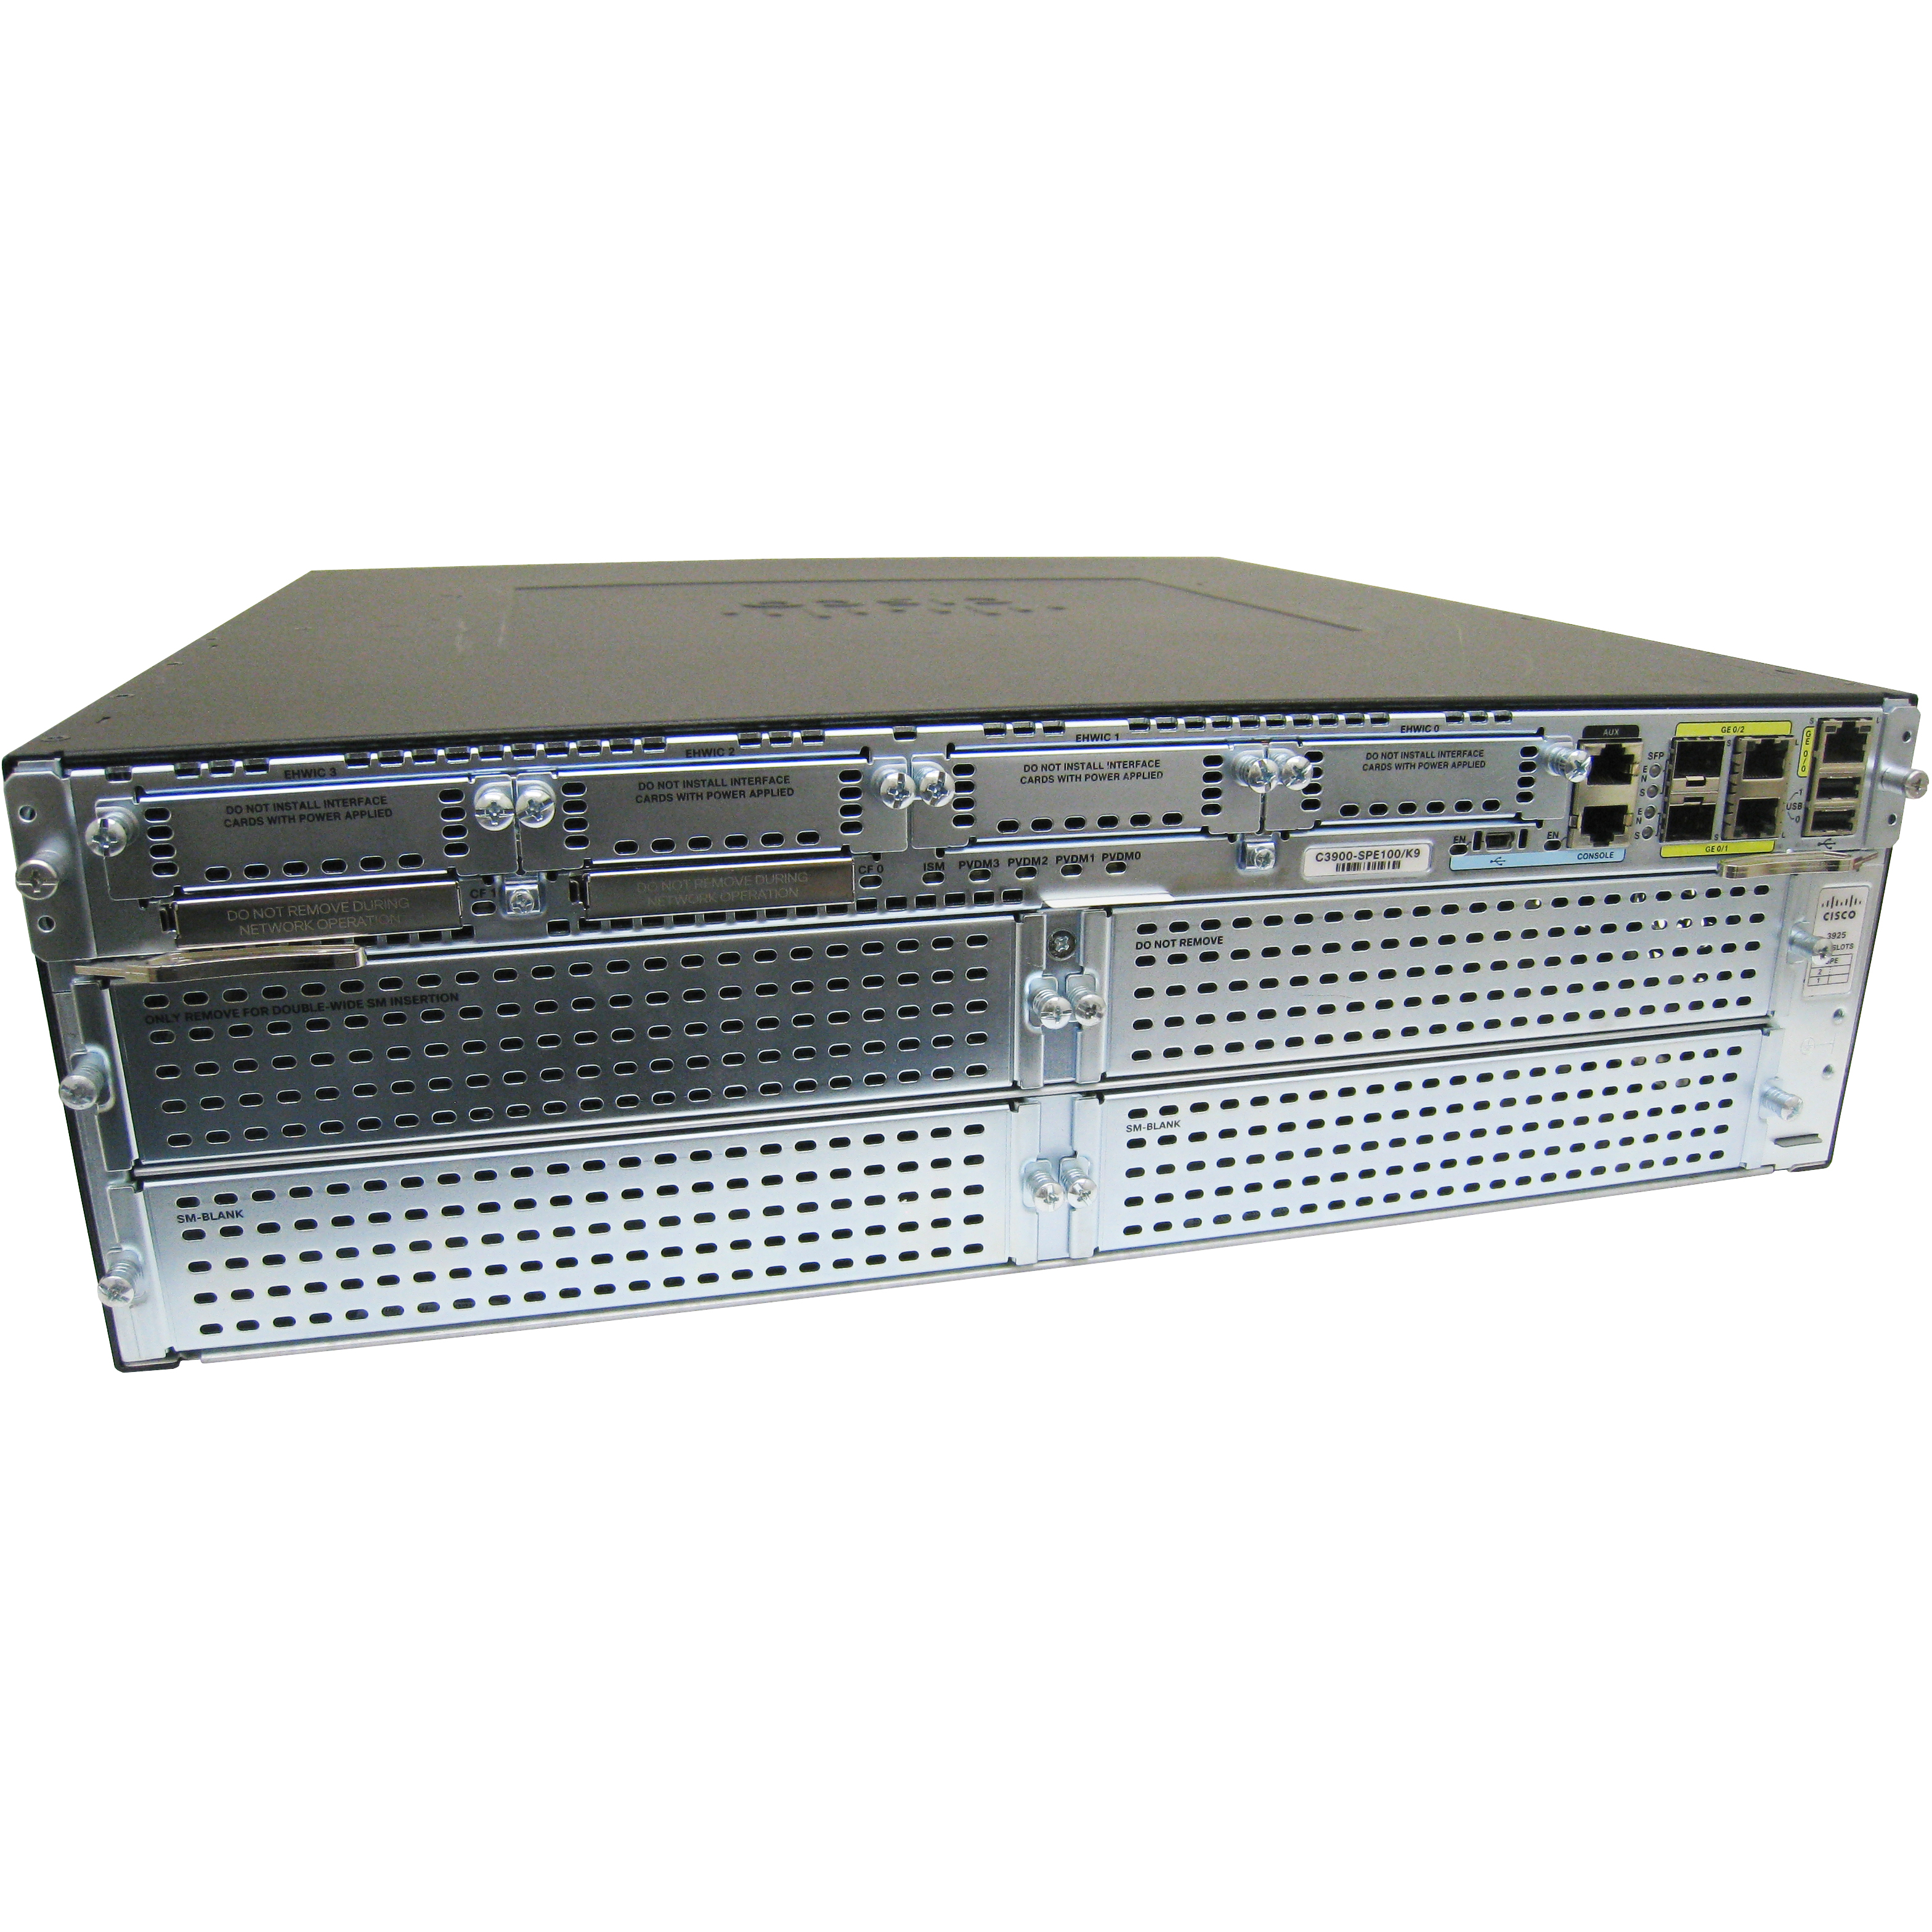 Cisco CISCO3925-SEC/K9